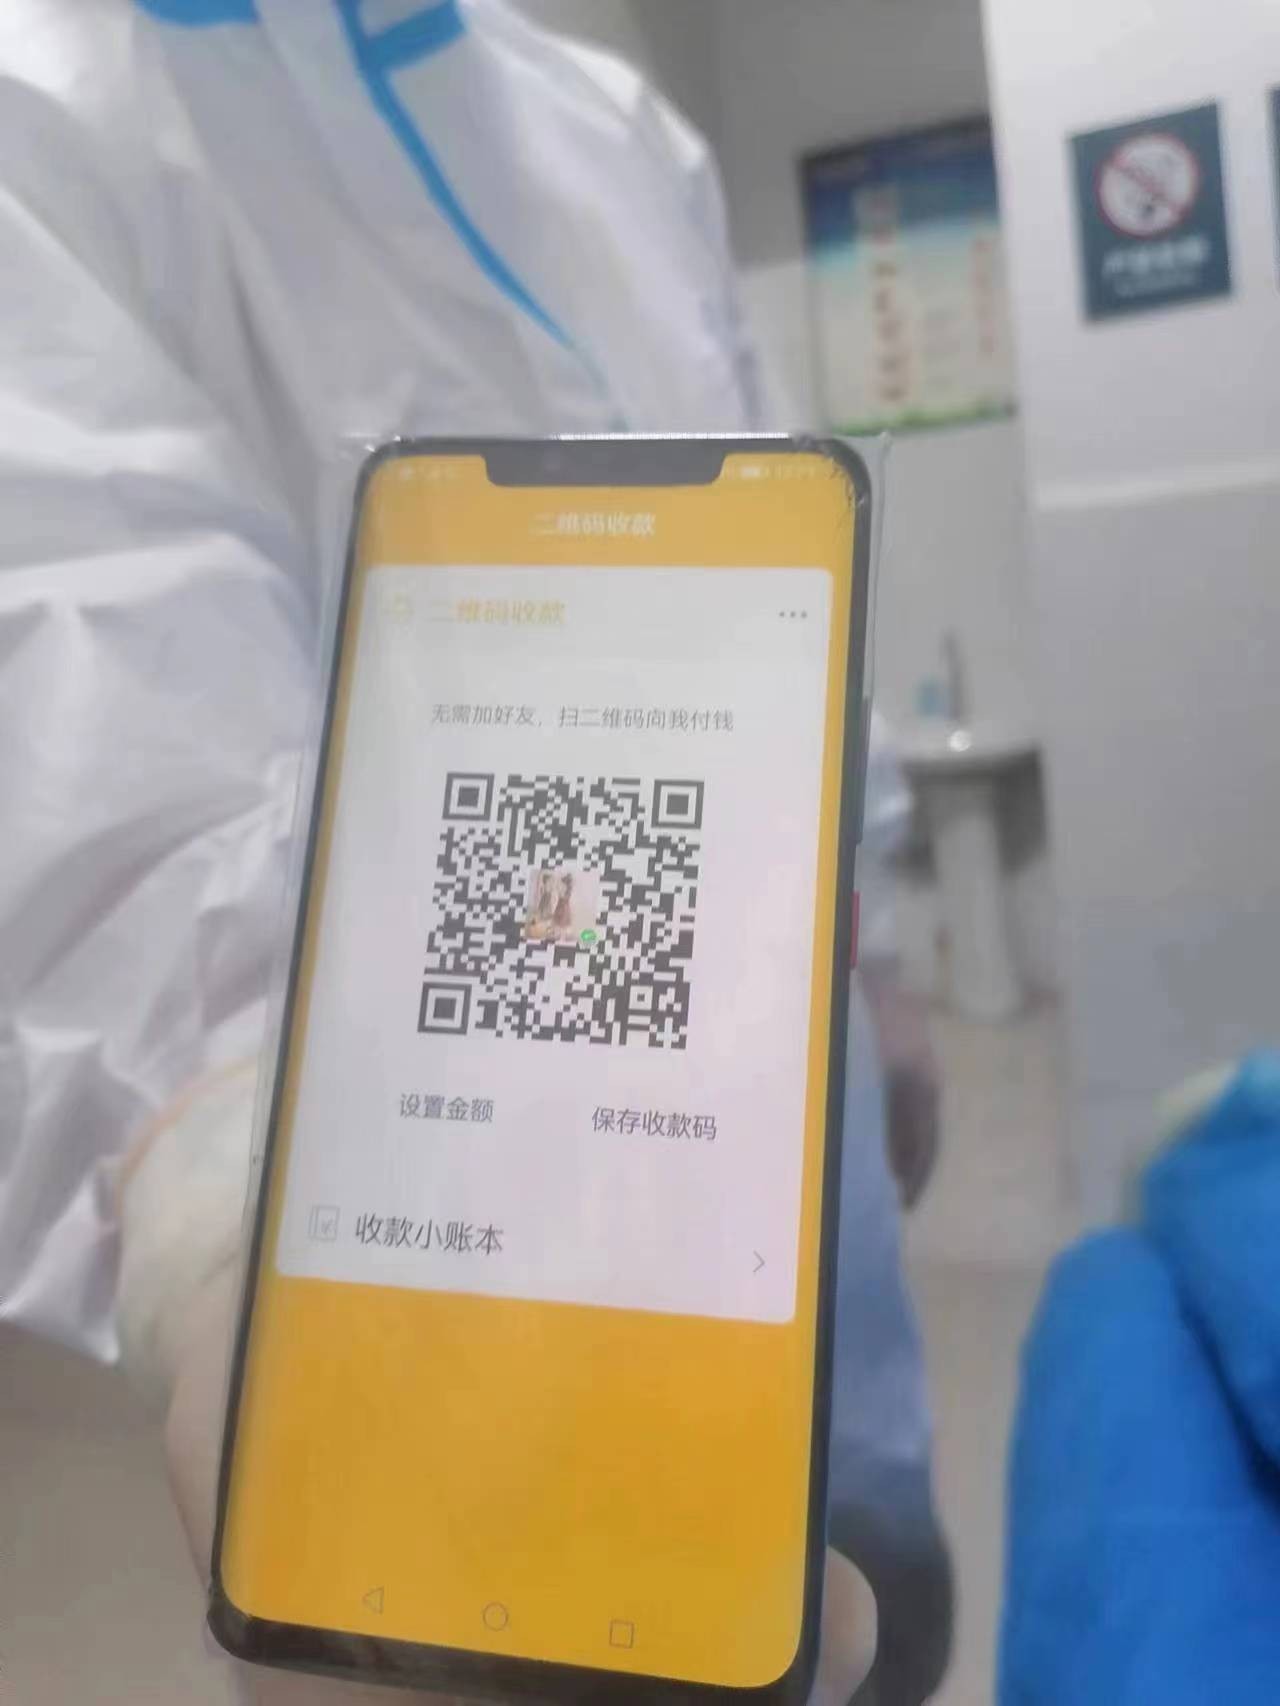 蓬安县人民医院工作人员展现收款码.jpg